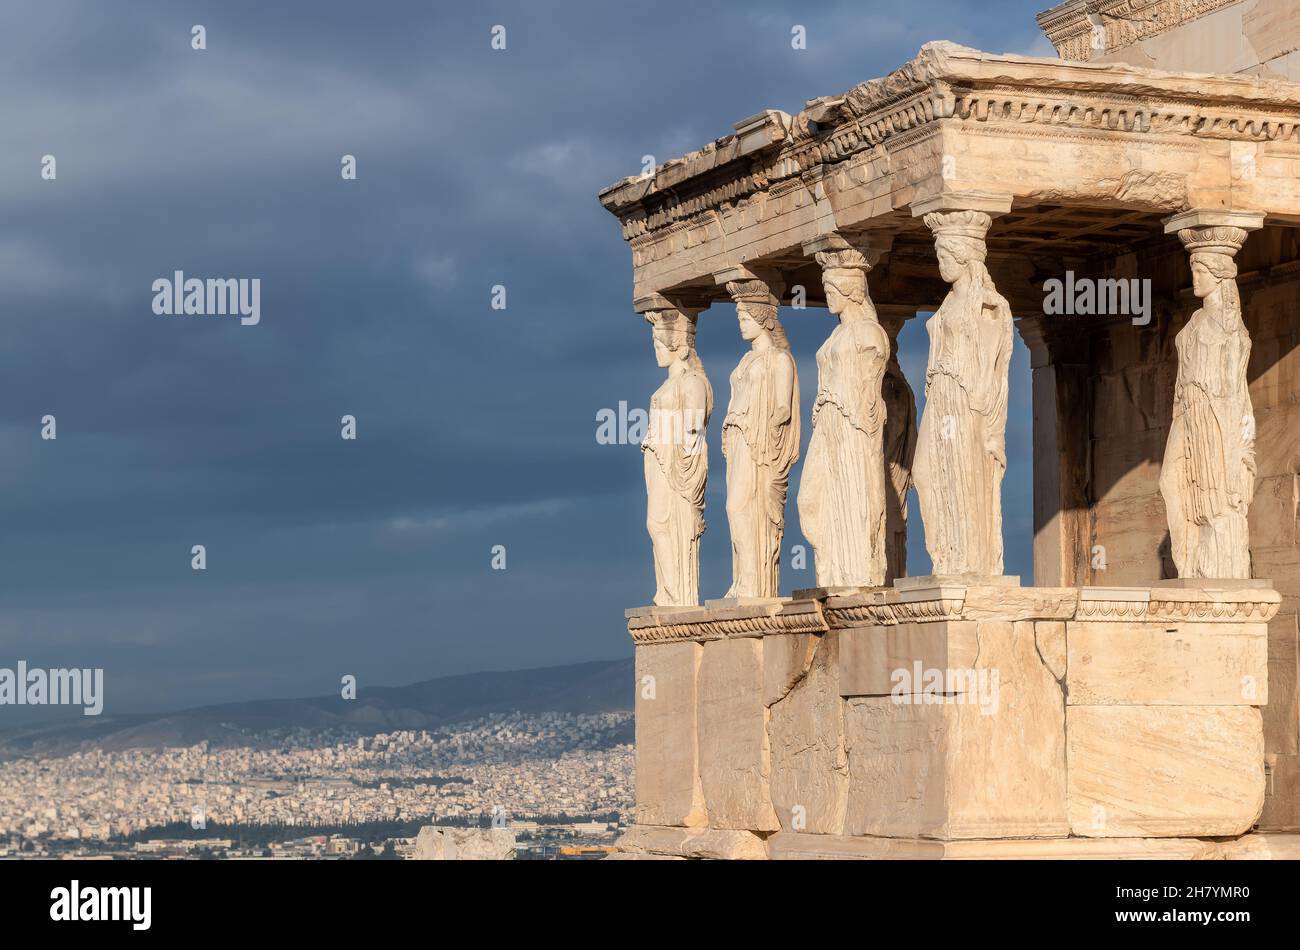 The Acropolis of Athens, Greece Stock Photo